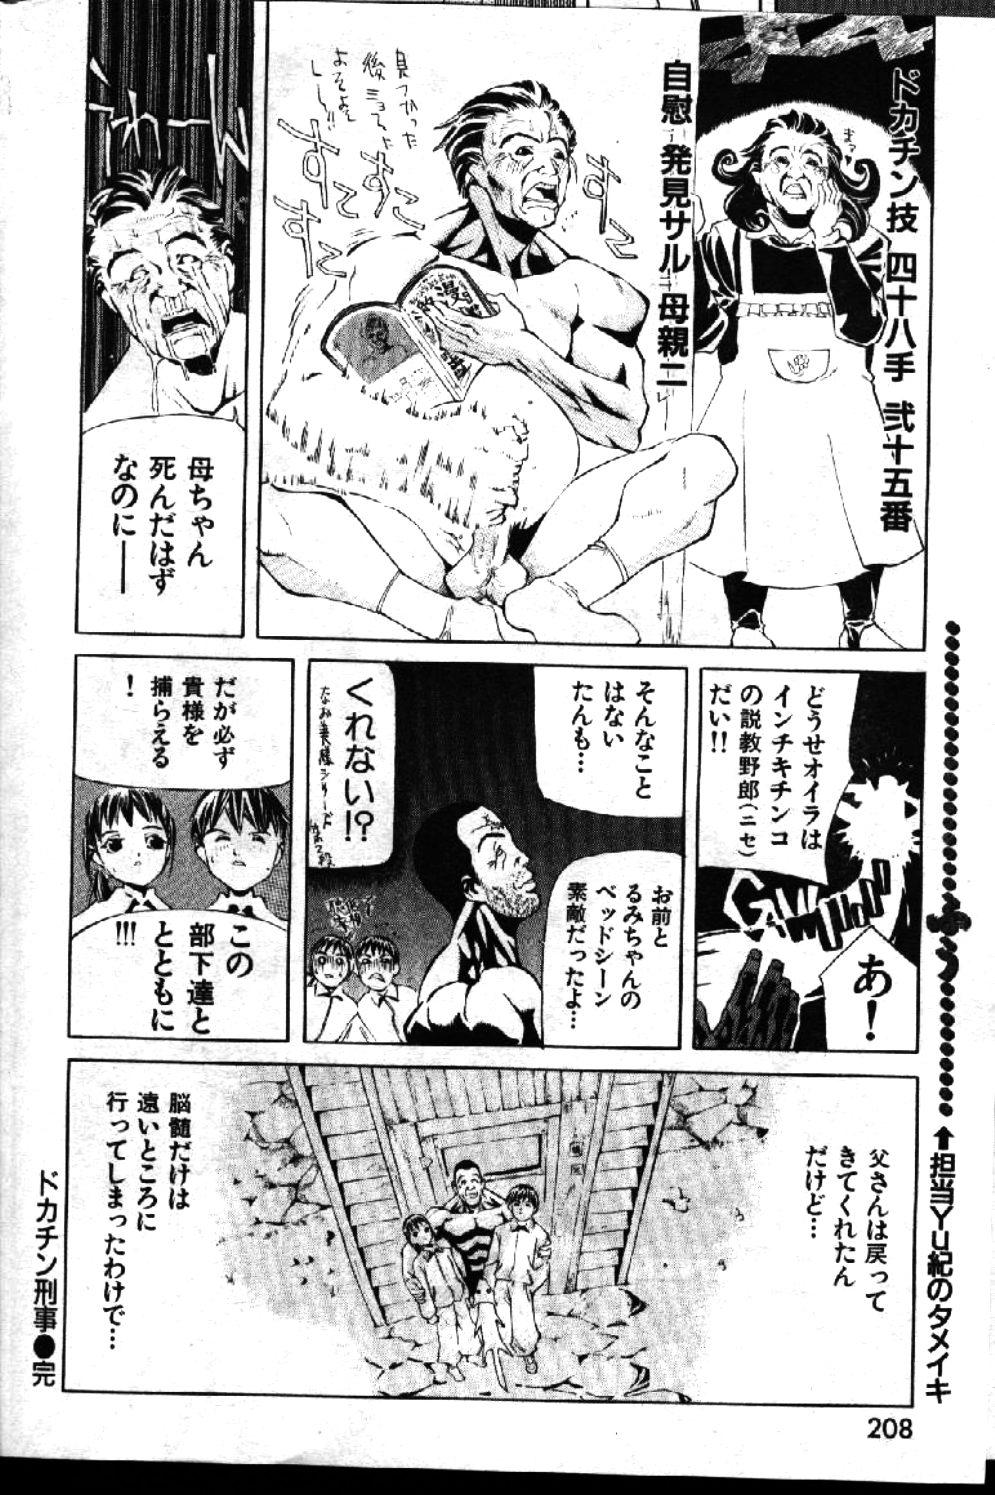 COMIC GEKIMAN 1999-01 Vol. 19 159